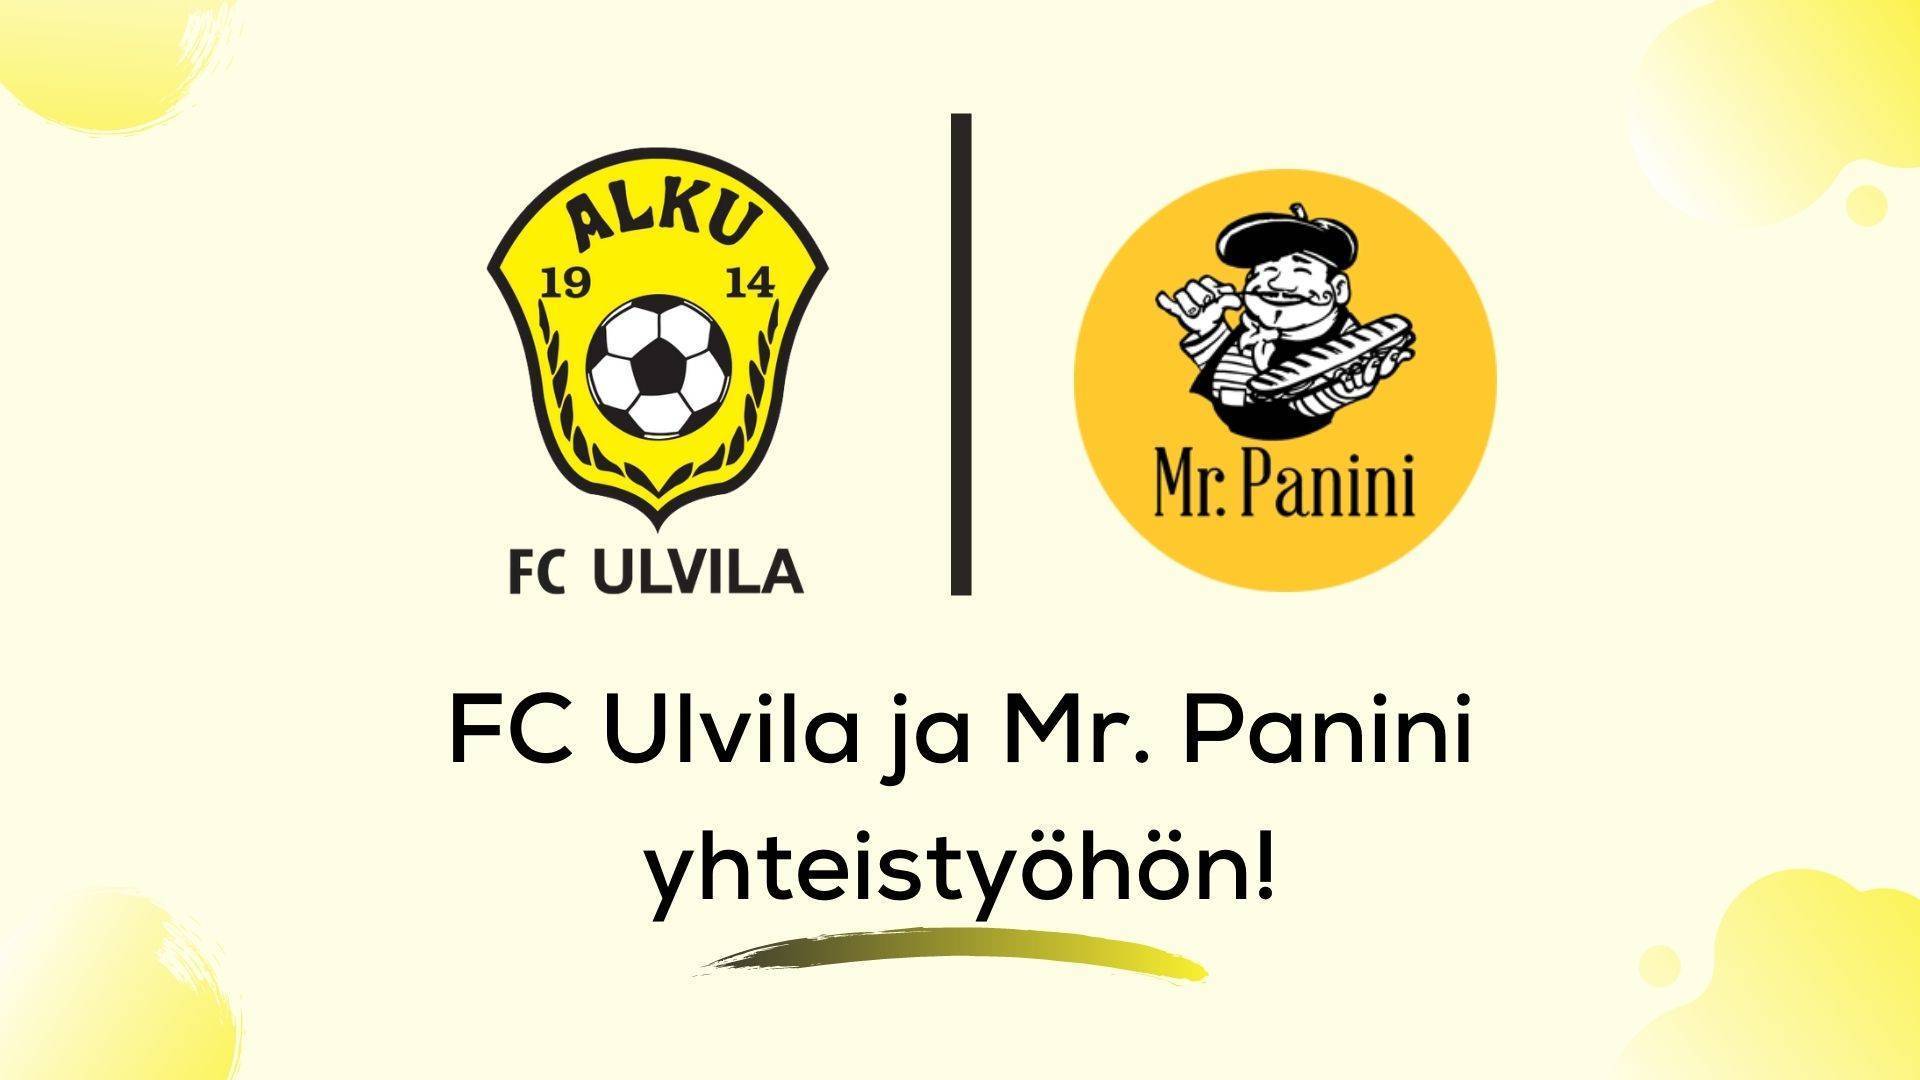 FC Ulvila ja Mr. Panini aloittavat yhteistyön